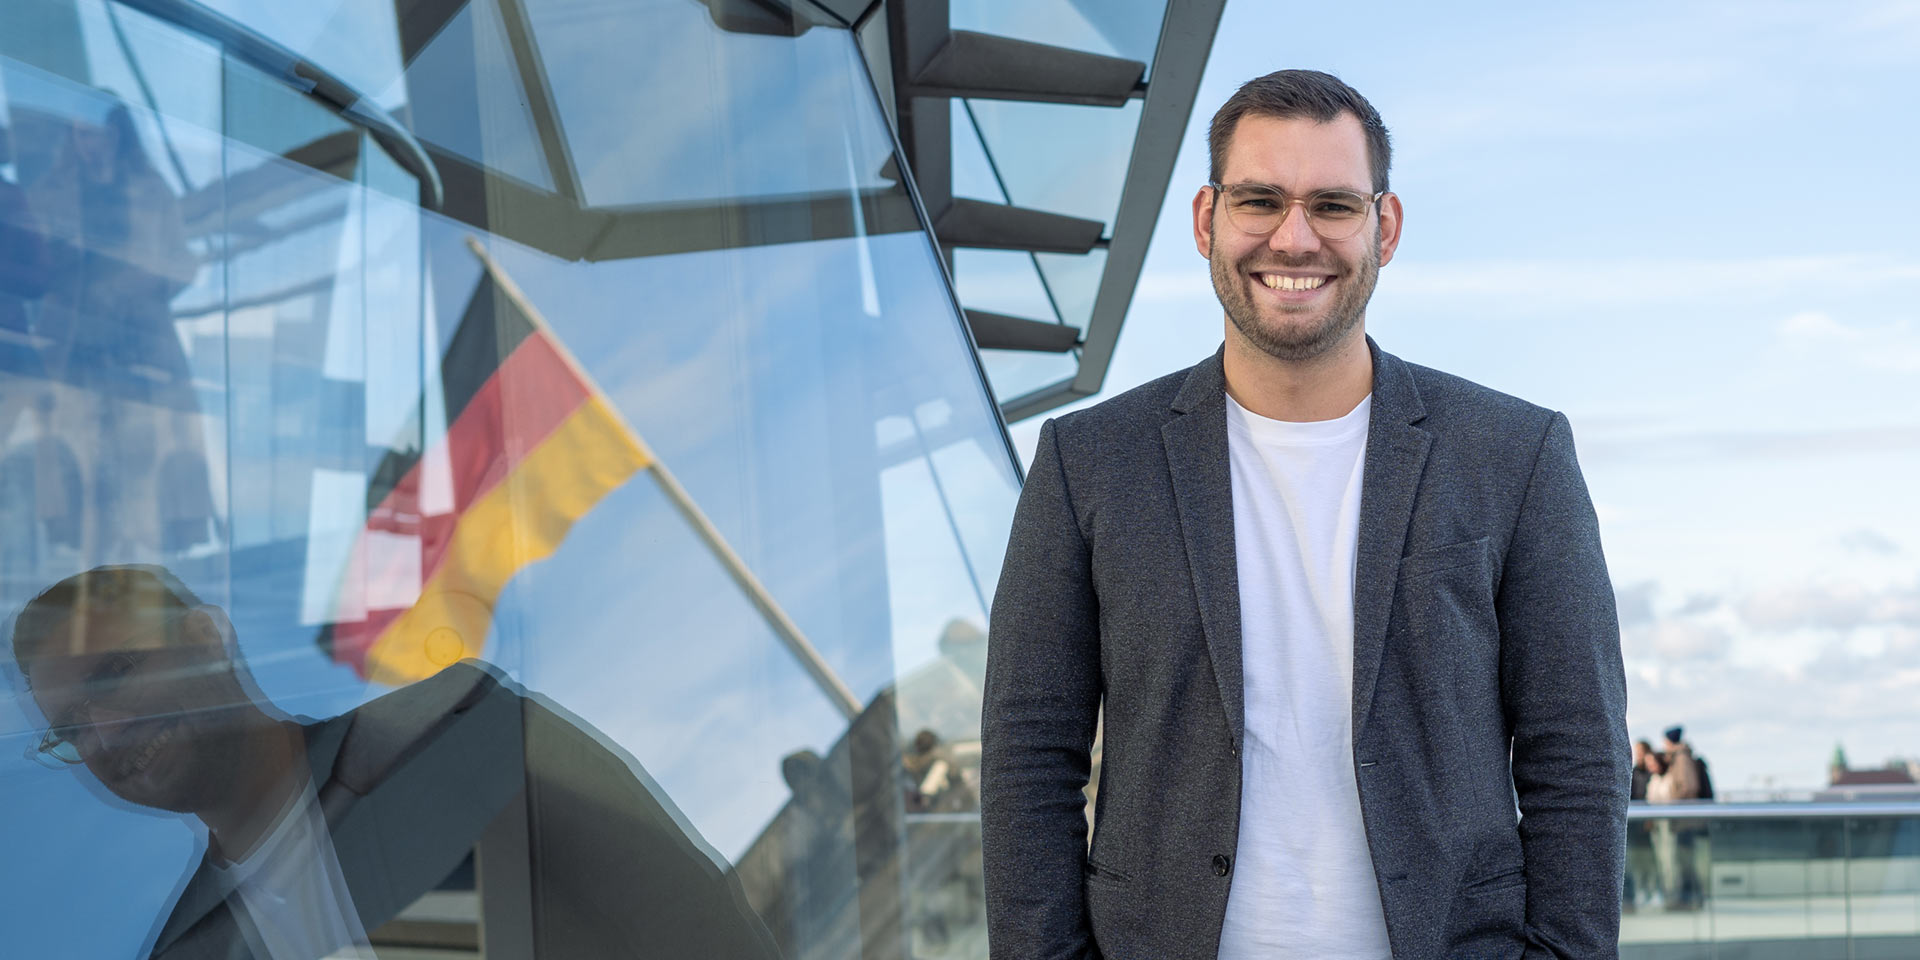 Daniel Baldy steht auf dem Dach des Bundestages, neben ihm spiegelt sich die Flagge der Bundesrepublik Deutschland im Fenster